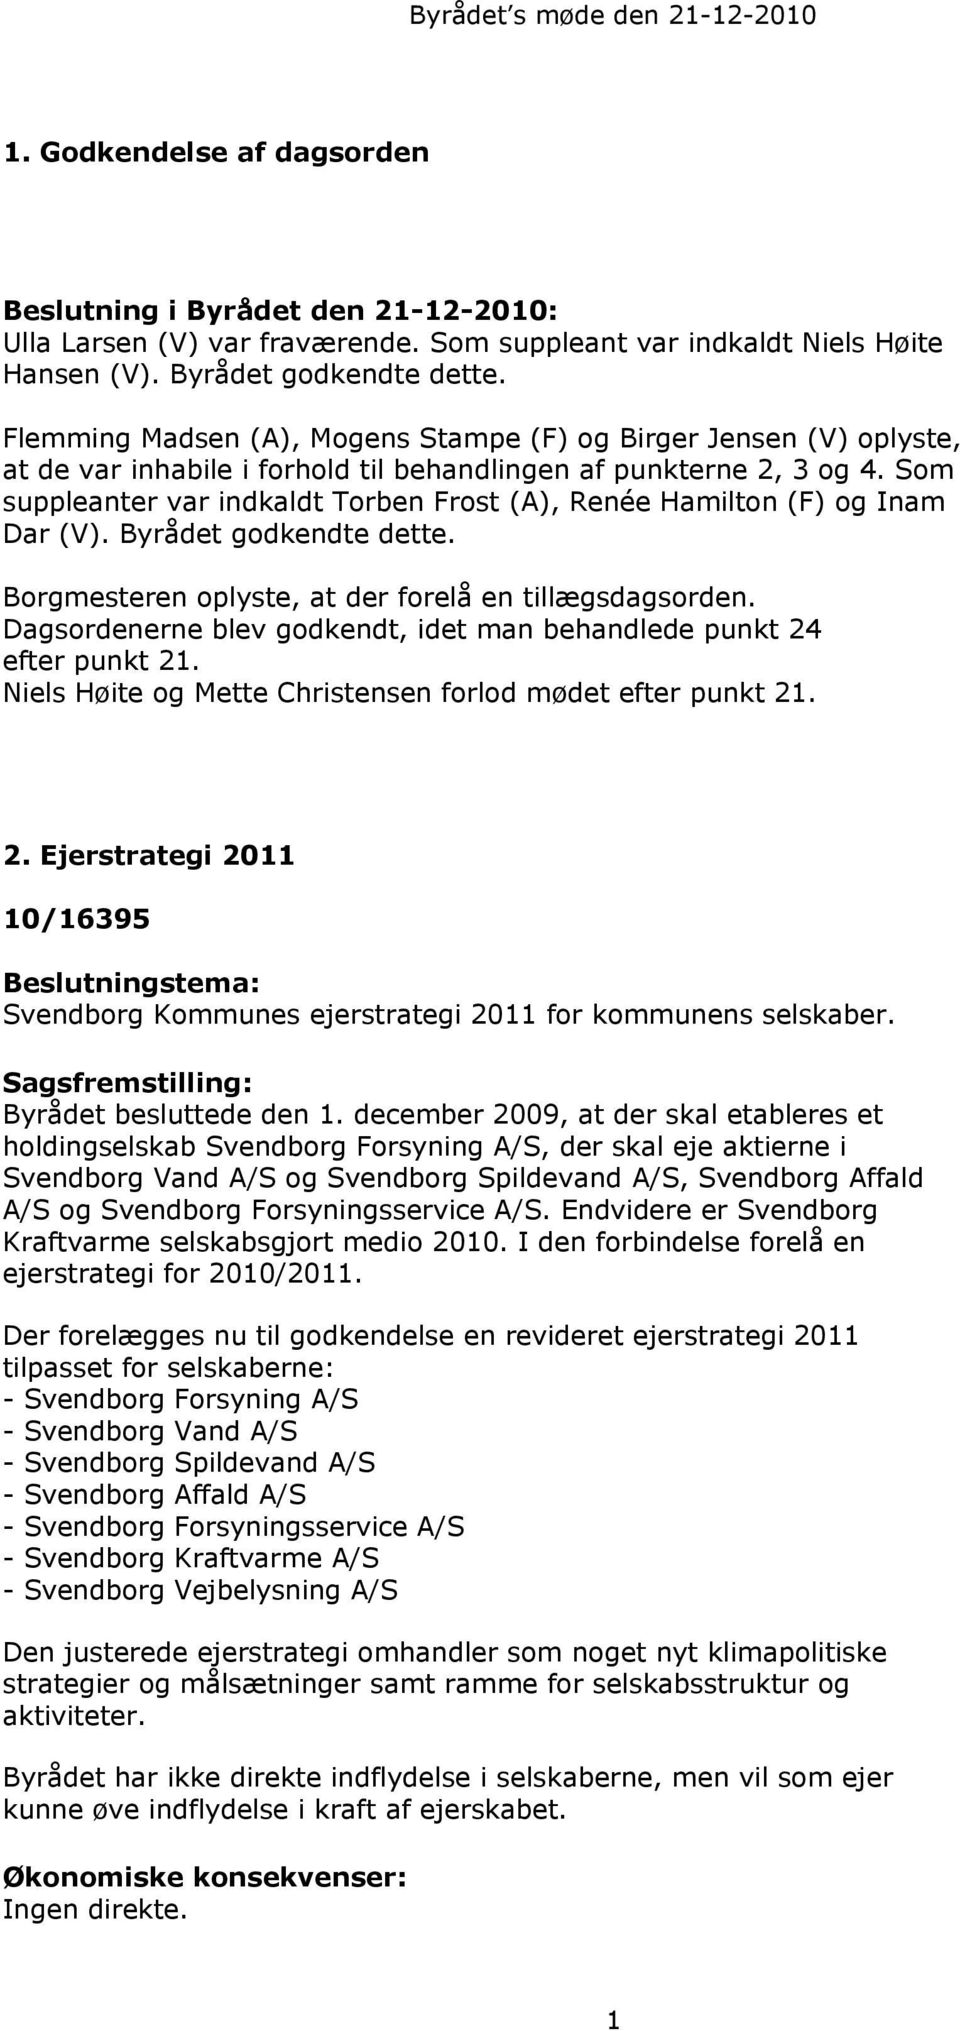 Dagsordenerne blev godkendt, idet man behandlede punkt 24 efter punkt 21. Niels Høite og Mette Christensen forlod mødet efter punkt 21. 2. Ejerstrategi 2011 10/16395 Svendborg Kommunes ejerstrategi 2011 for kommunens selskaber.